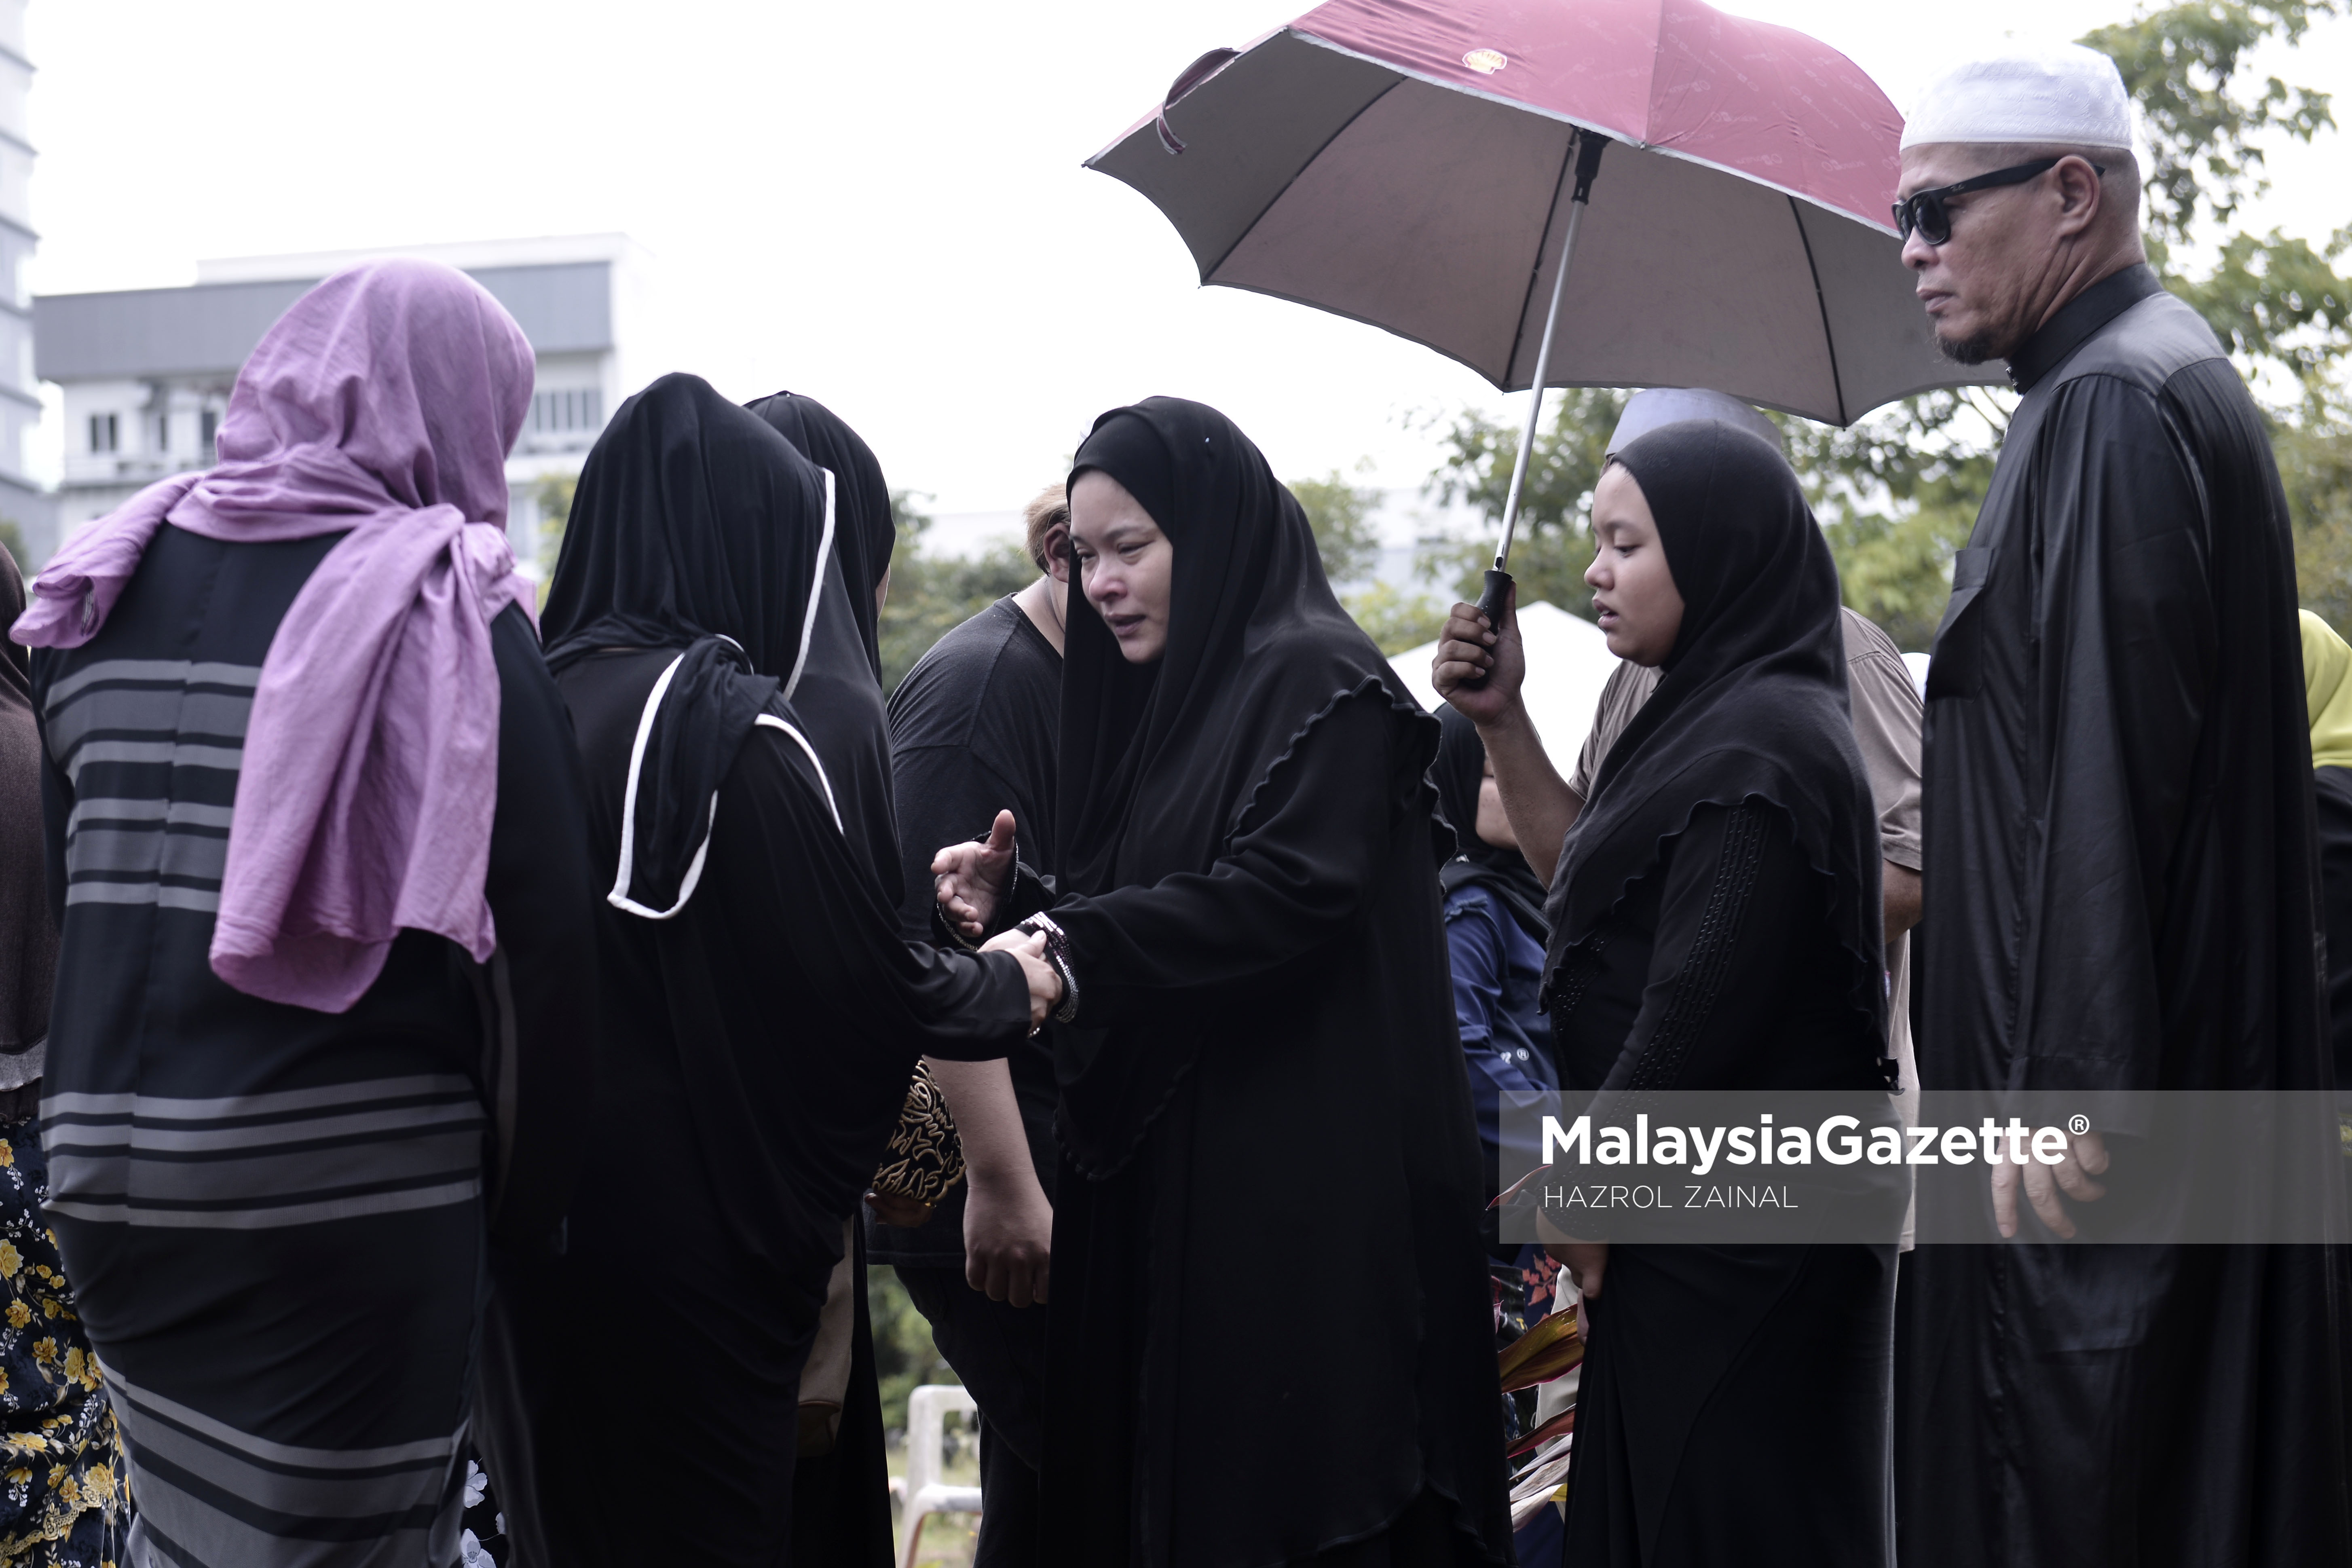 Isteri Allahyarham, Nora Ariffin (tengah) ditenangkan sanak saudara ketika pengebumian suaminya Allahyarham Johan Nawawi di Tanah Perkuburan Islam Bukit Kiara, Kuala Lumpur. foto MOHD HAZROL ZAINAL, 24 MAC 2017.